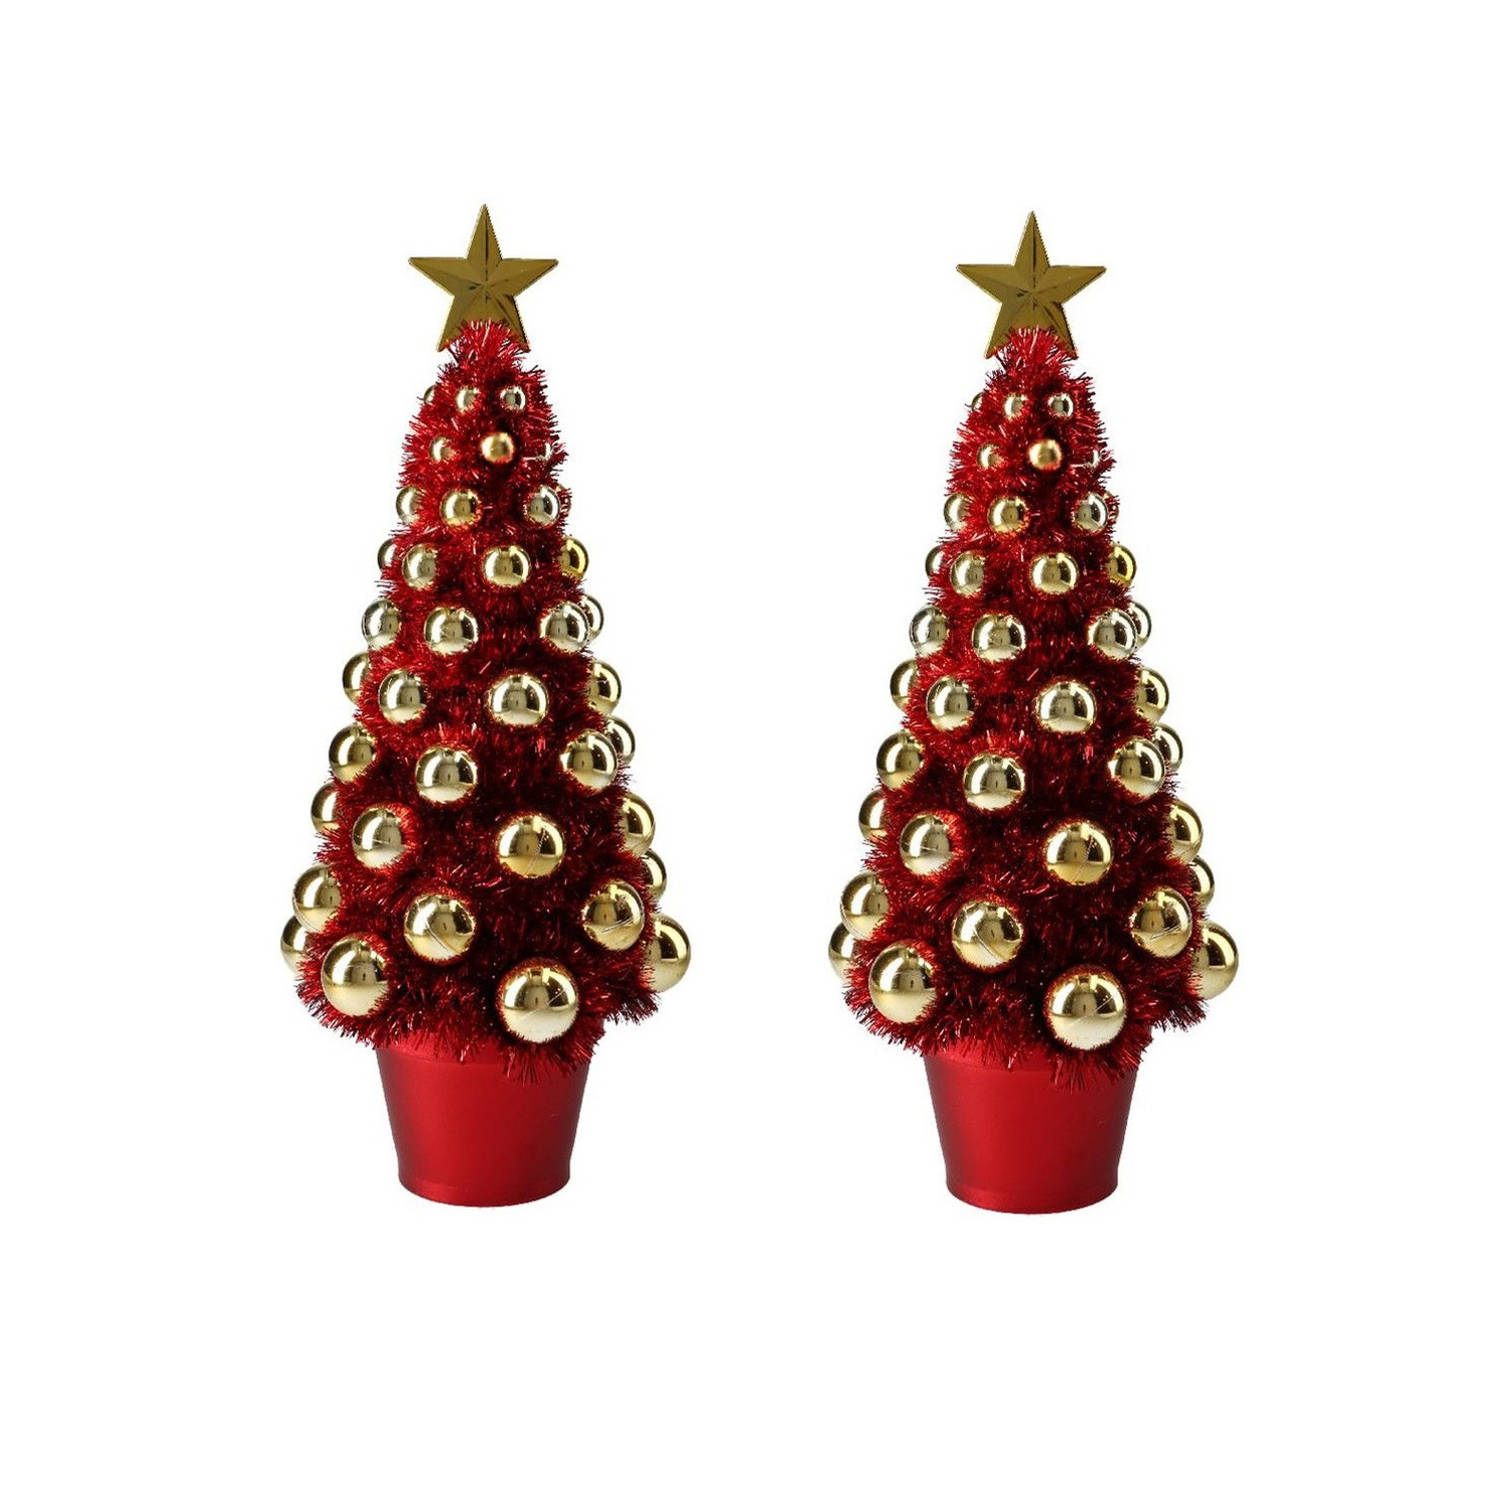 2x Stuks Complete Mini Kunst Kerstboompje-kunstboompje Rood-goud Met Kerstballen 40 Cm Kunstkerstboo